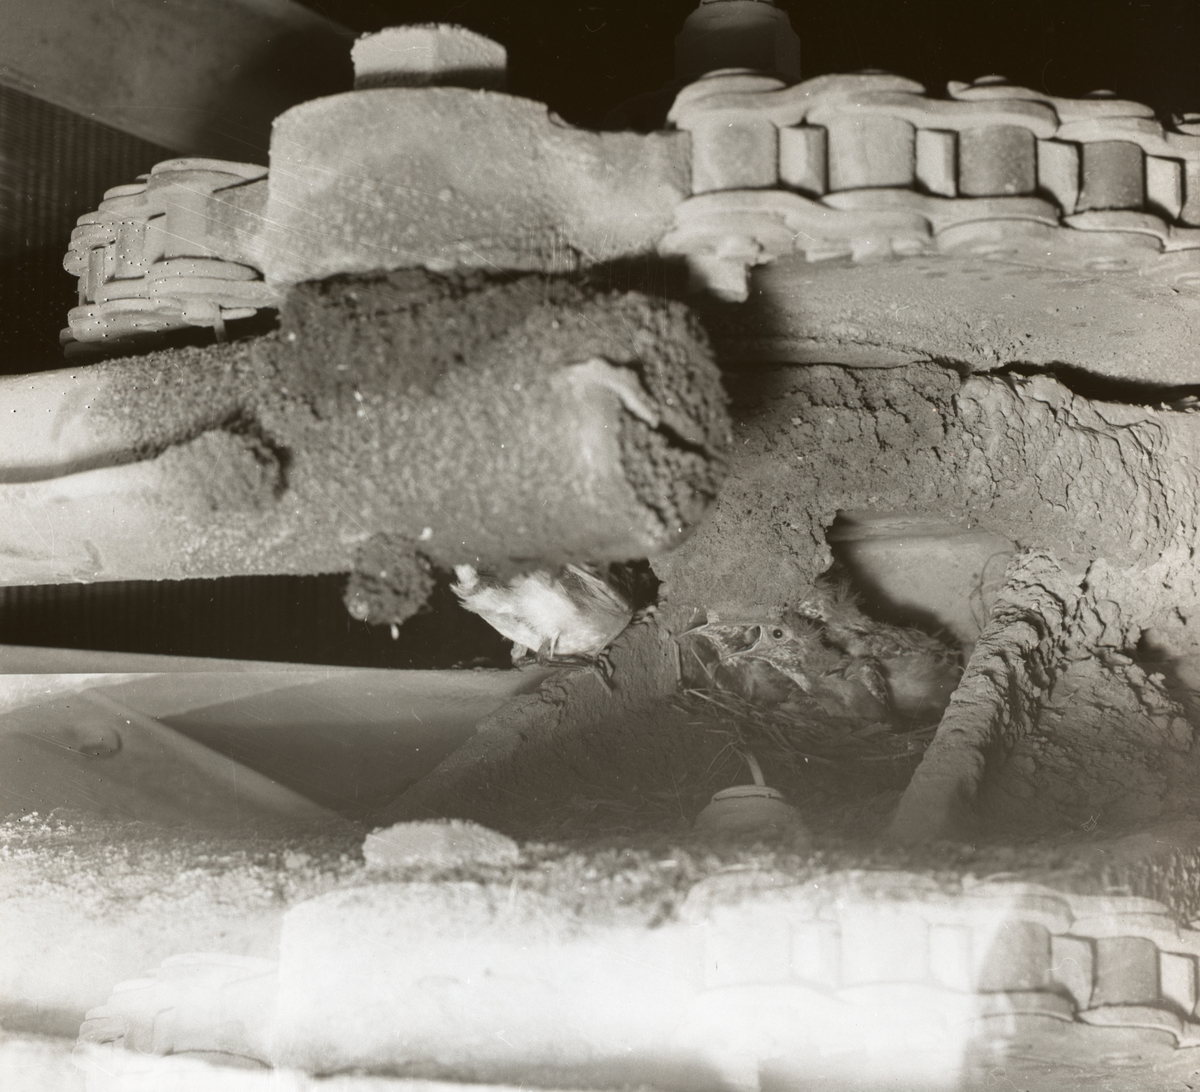 Ett sädesärlpar har byggt bo under en truckhuv vid midnäsfabriken och nu ligger deras ungar där och skriker efter mat, 13 juli 1955.